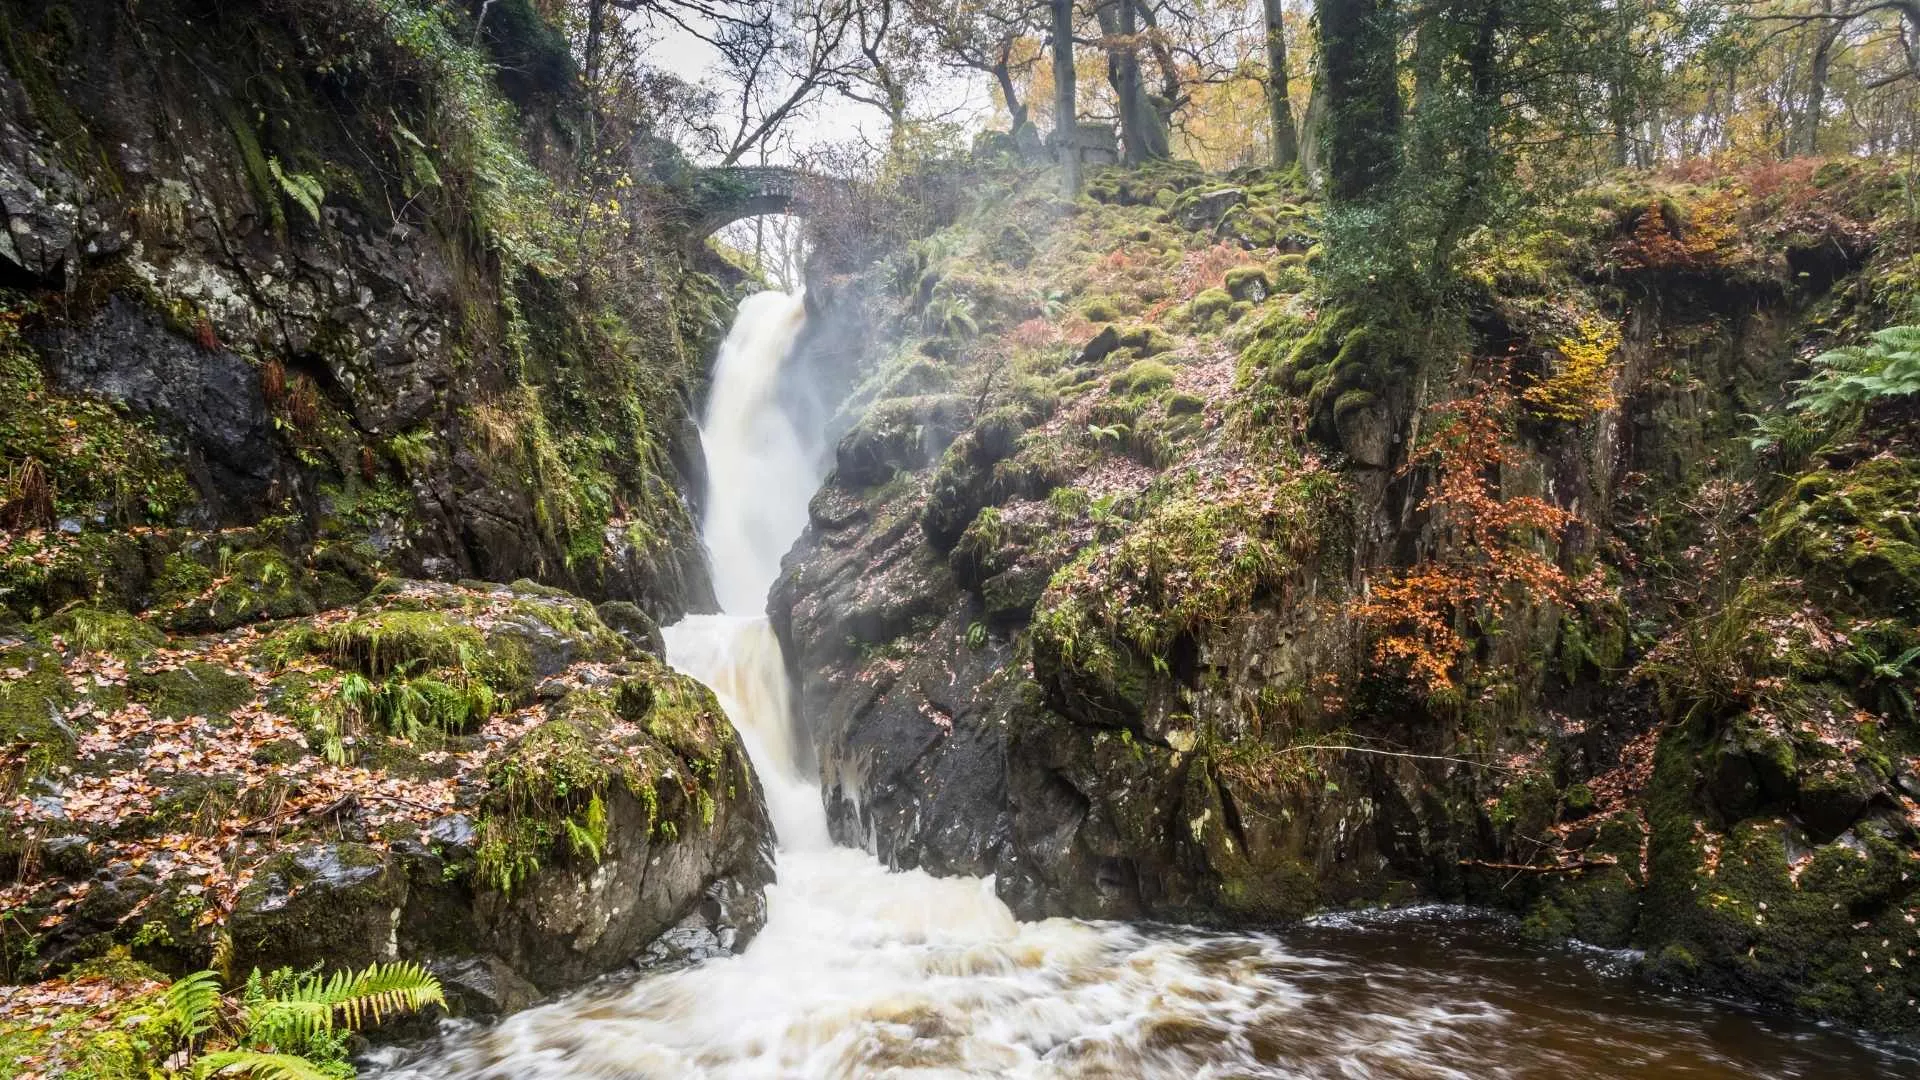 Aira Force, England beautiful waterfalls